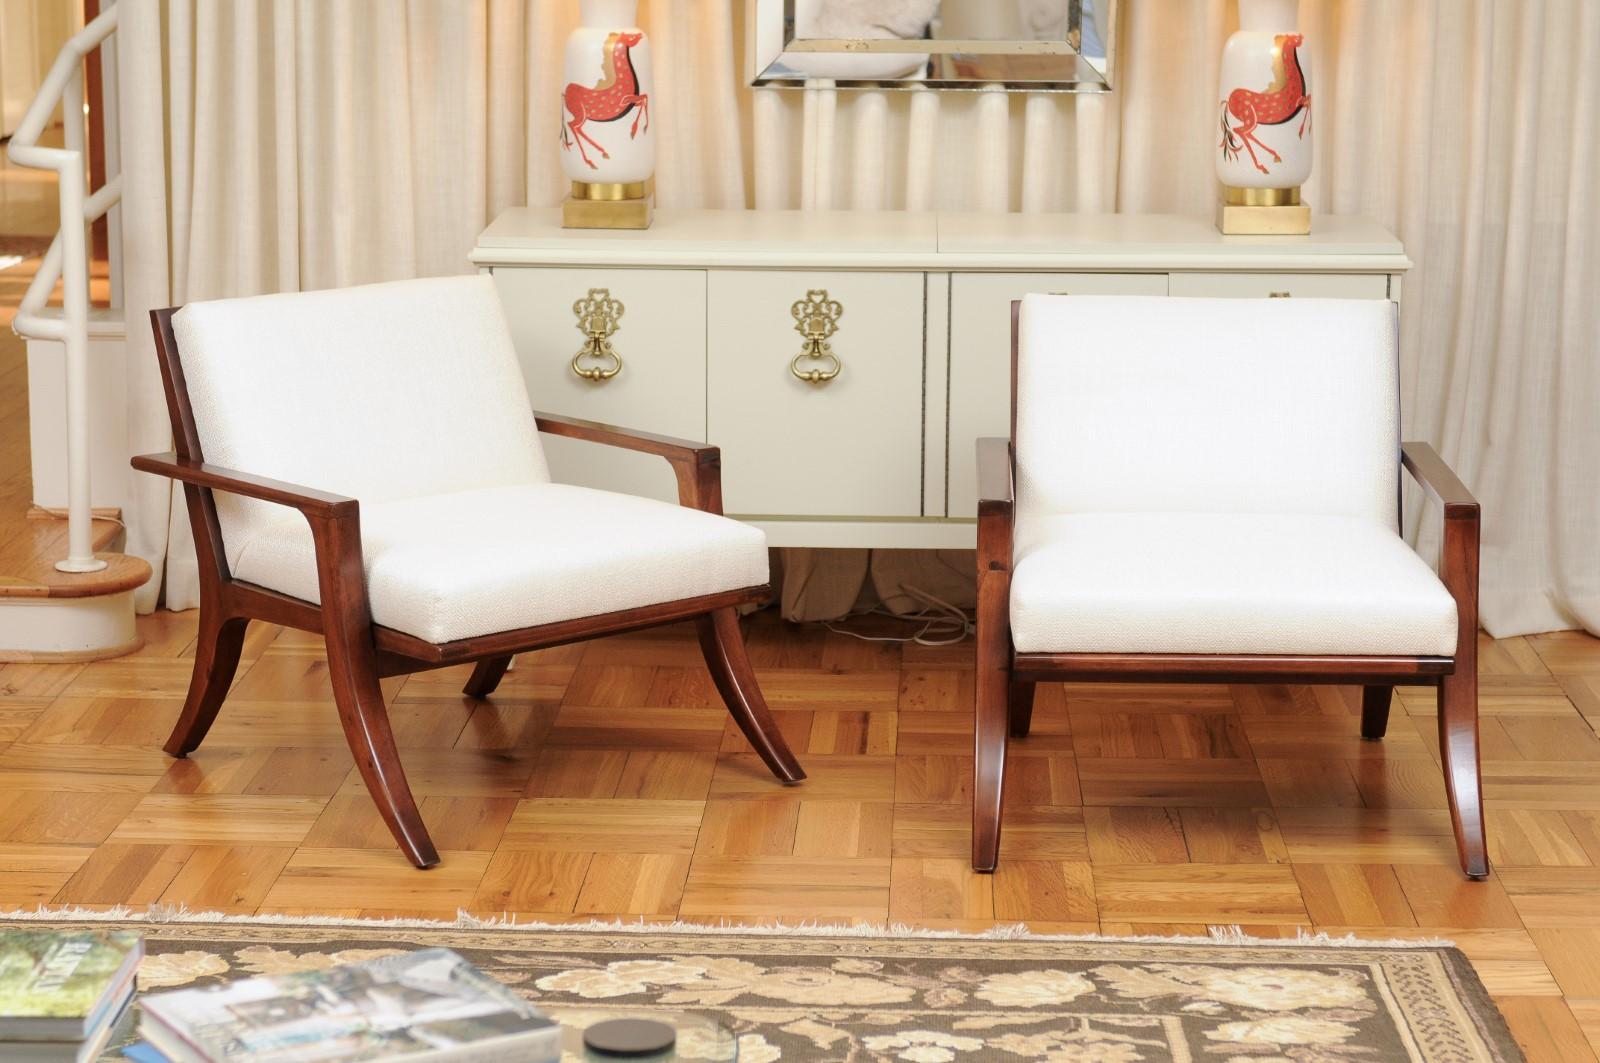 Ces magnifiques chaises longues sont expédiées telles qu'elles ont été photographiées par des professionnels et décrites dans le texte de l'annonce : Méticuleusement restaurés par des professionnels et prêts à être installés. Un service de tissu sur